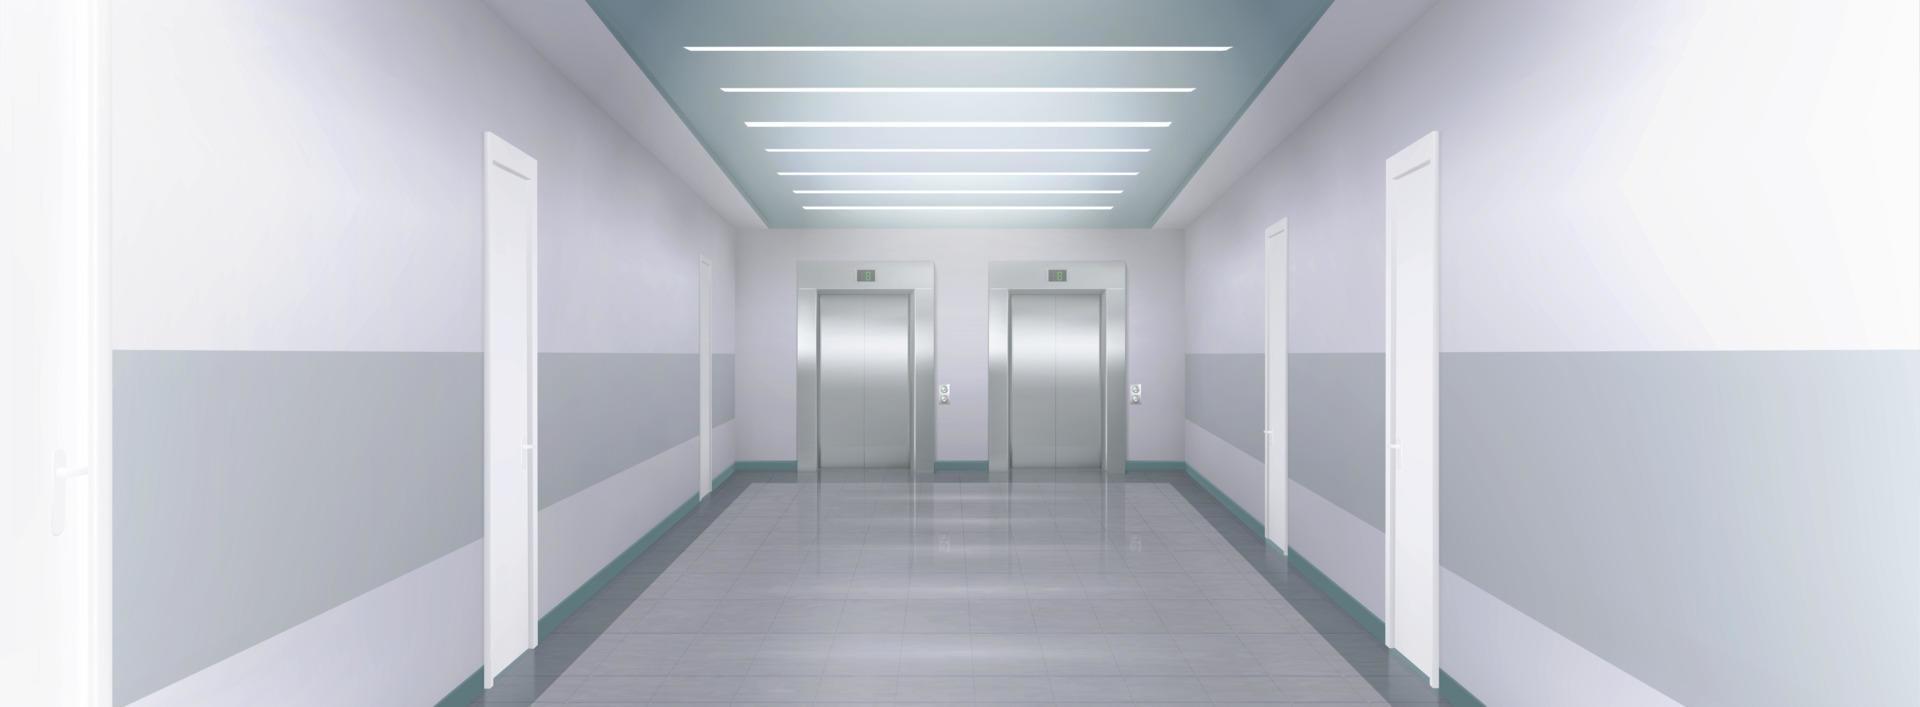 metaal lift deuren in kantoor, ziekenhuis, hotel vector